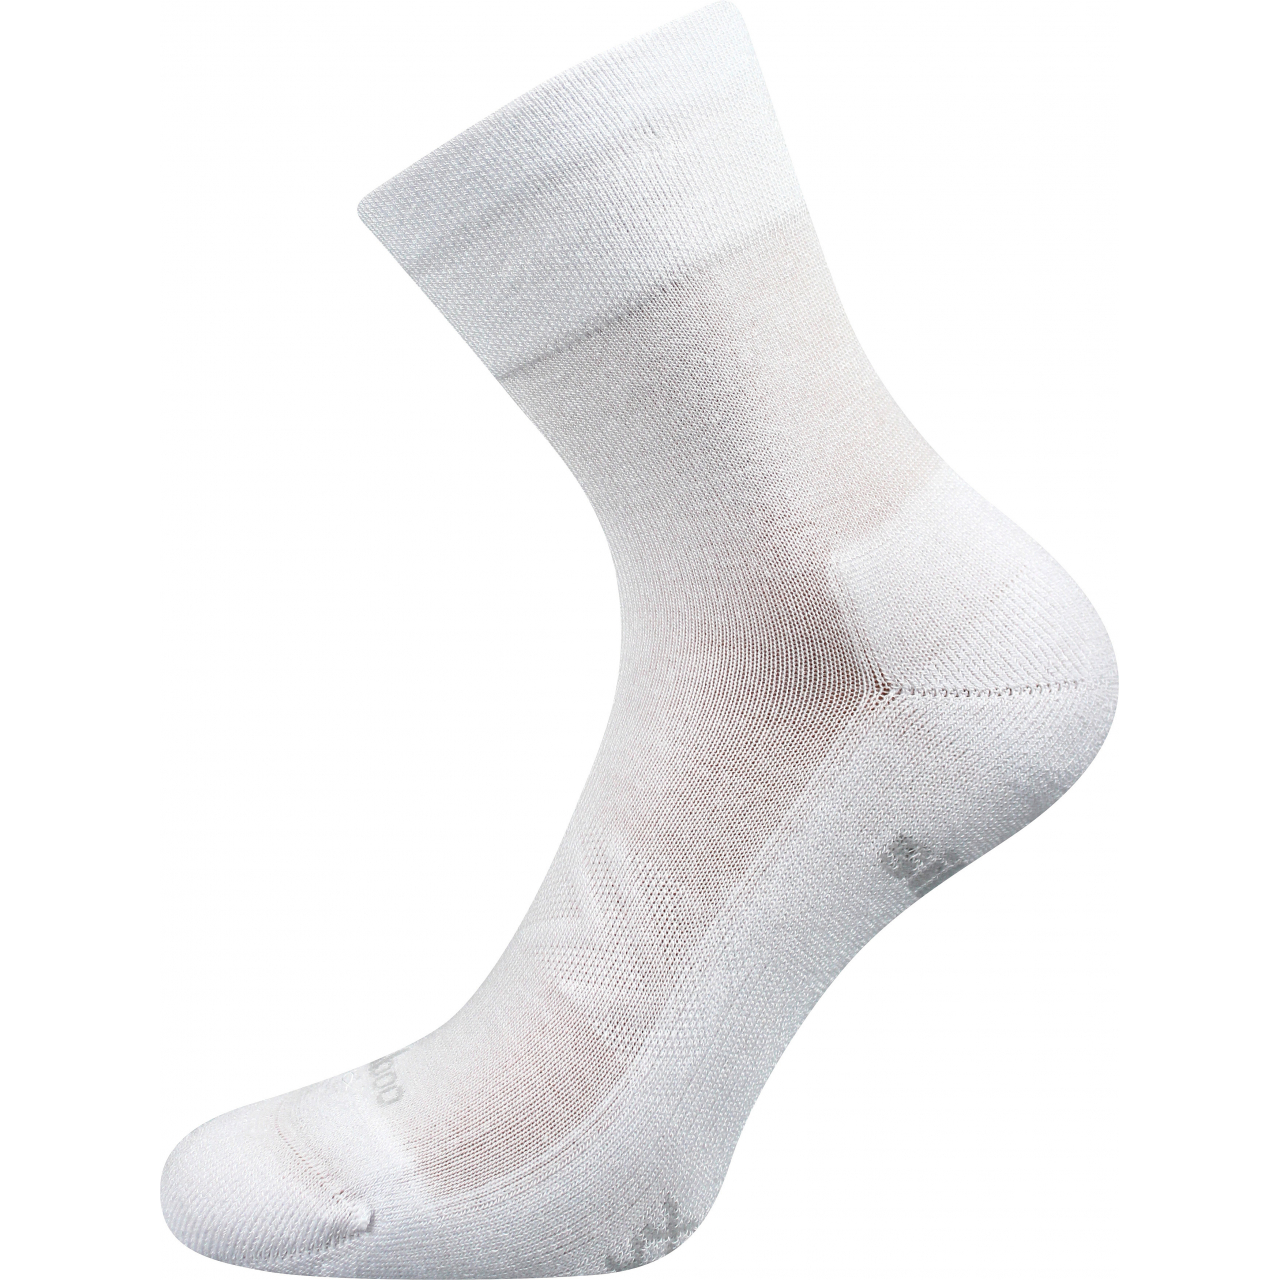 Ponožky sportovní unisex Voxx Esencis - bílé, 39-42